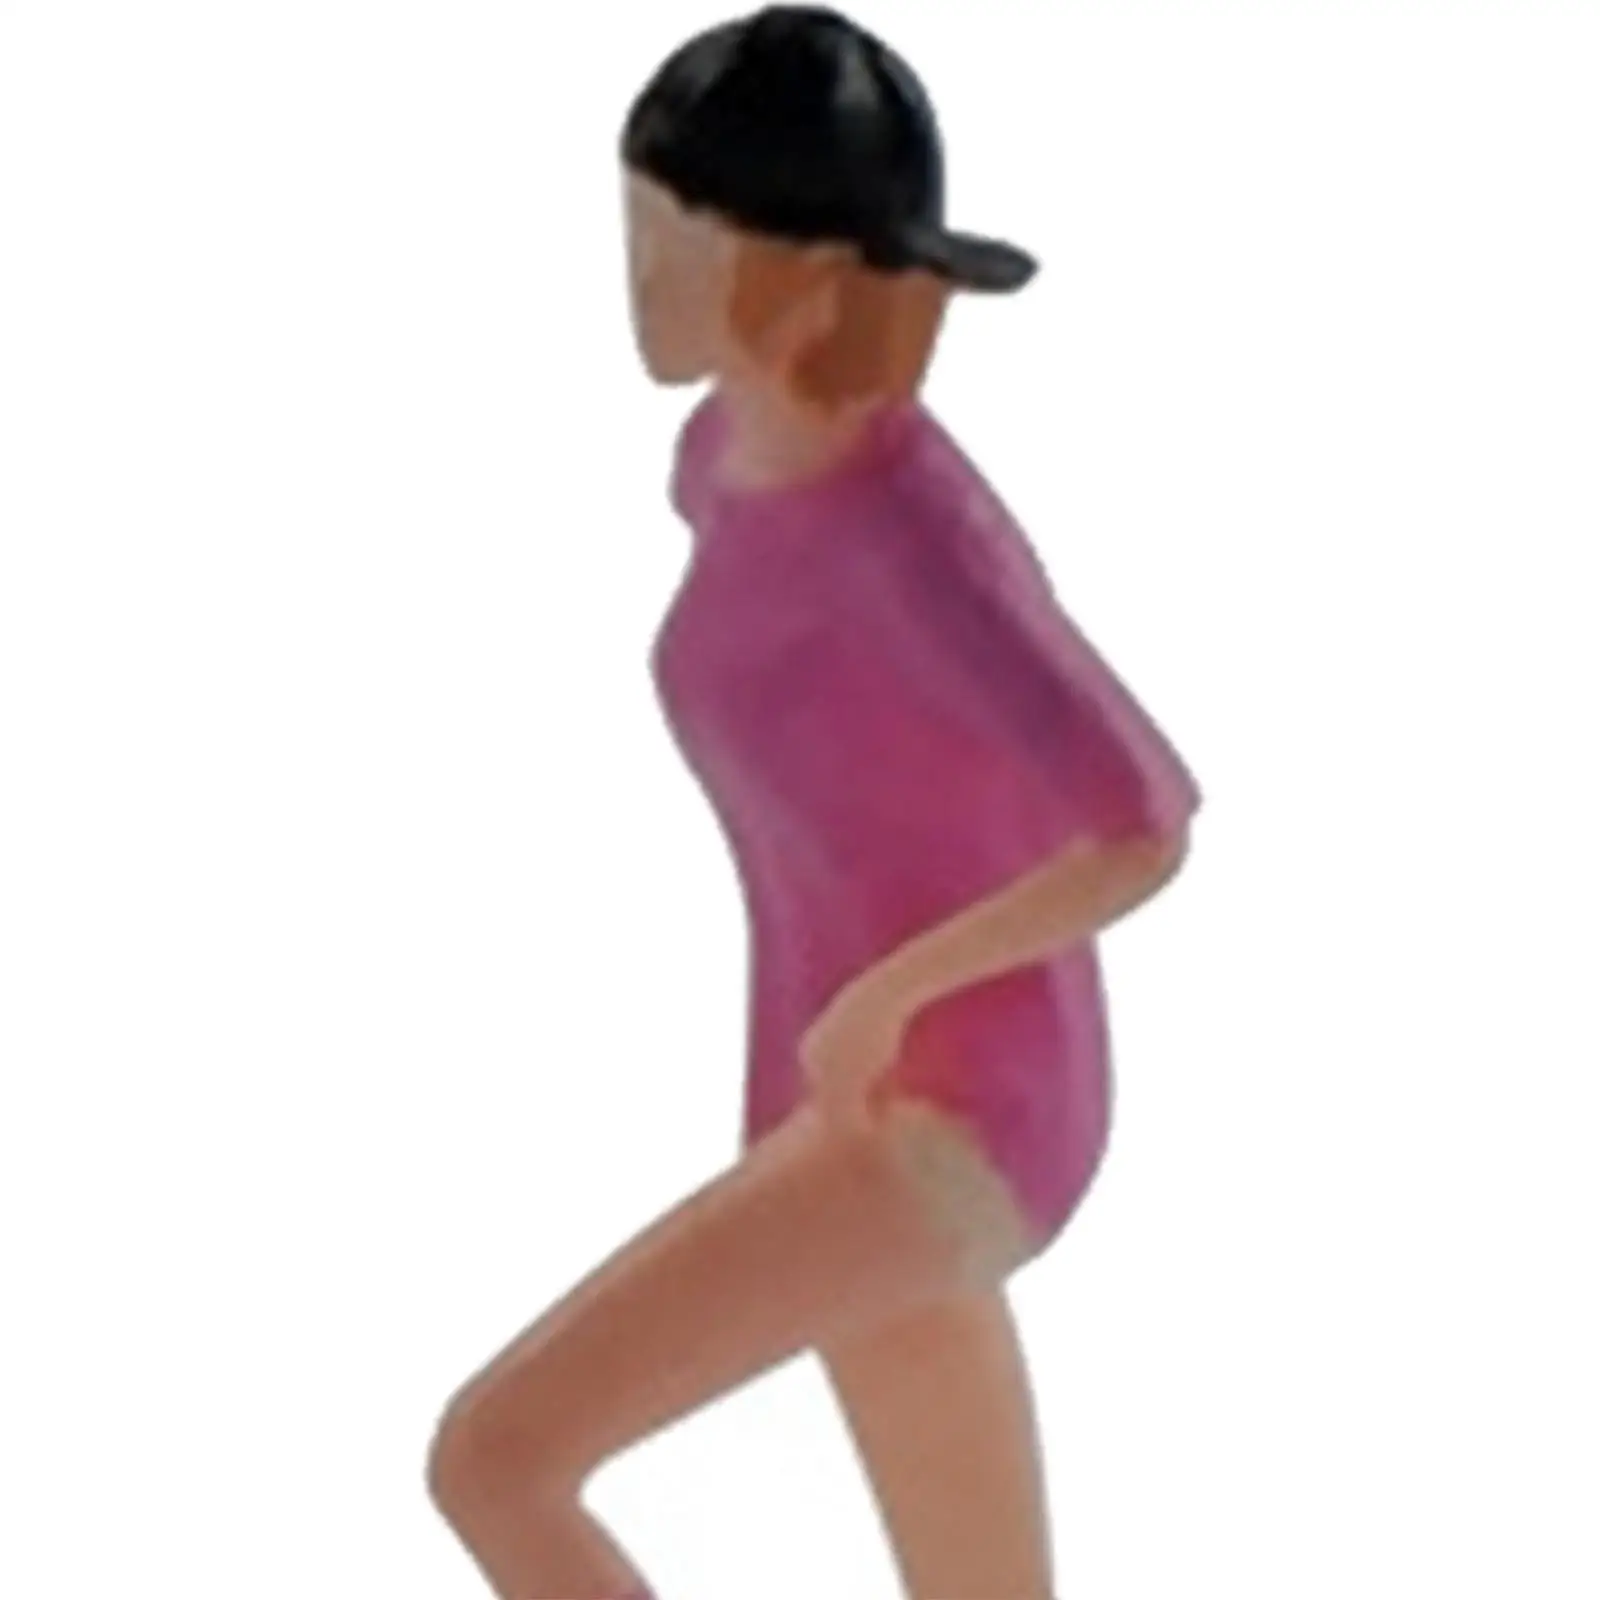 1:64 Figure Skateboard Girl Mini People Model for Model Train DIY Projects Layout